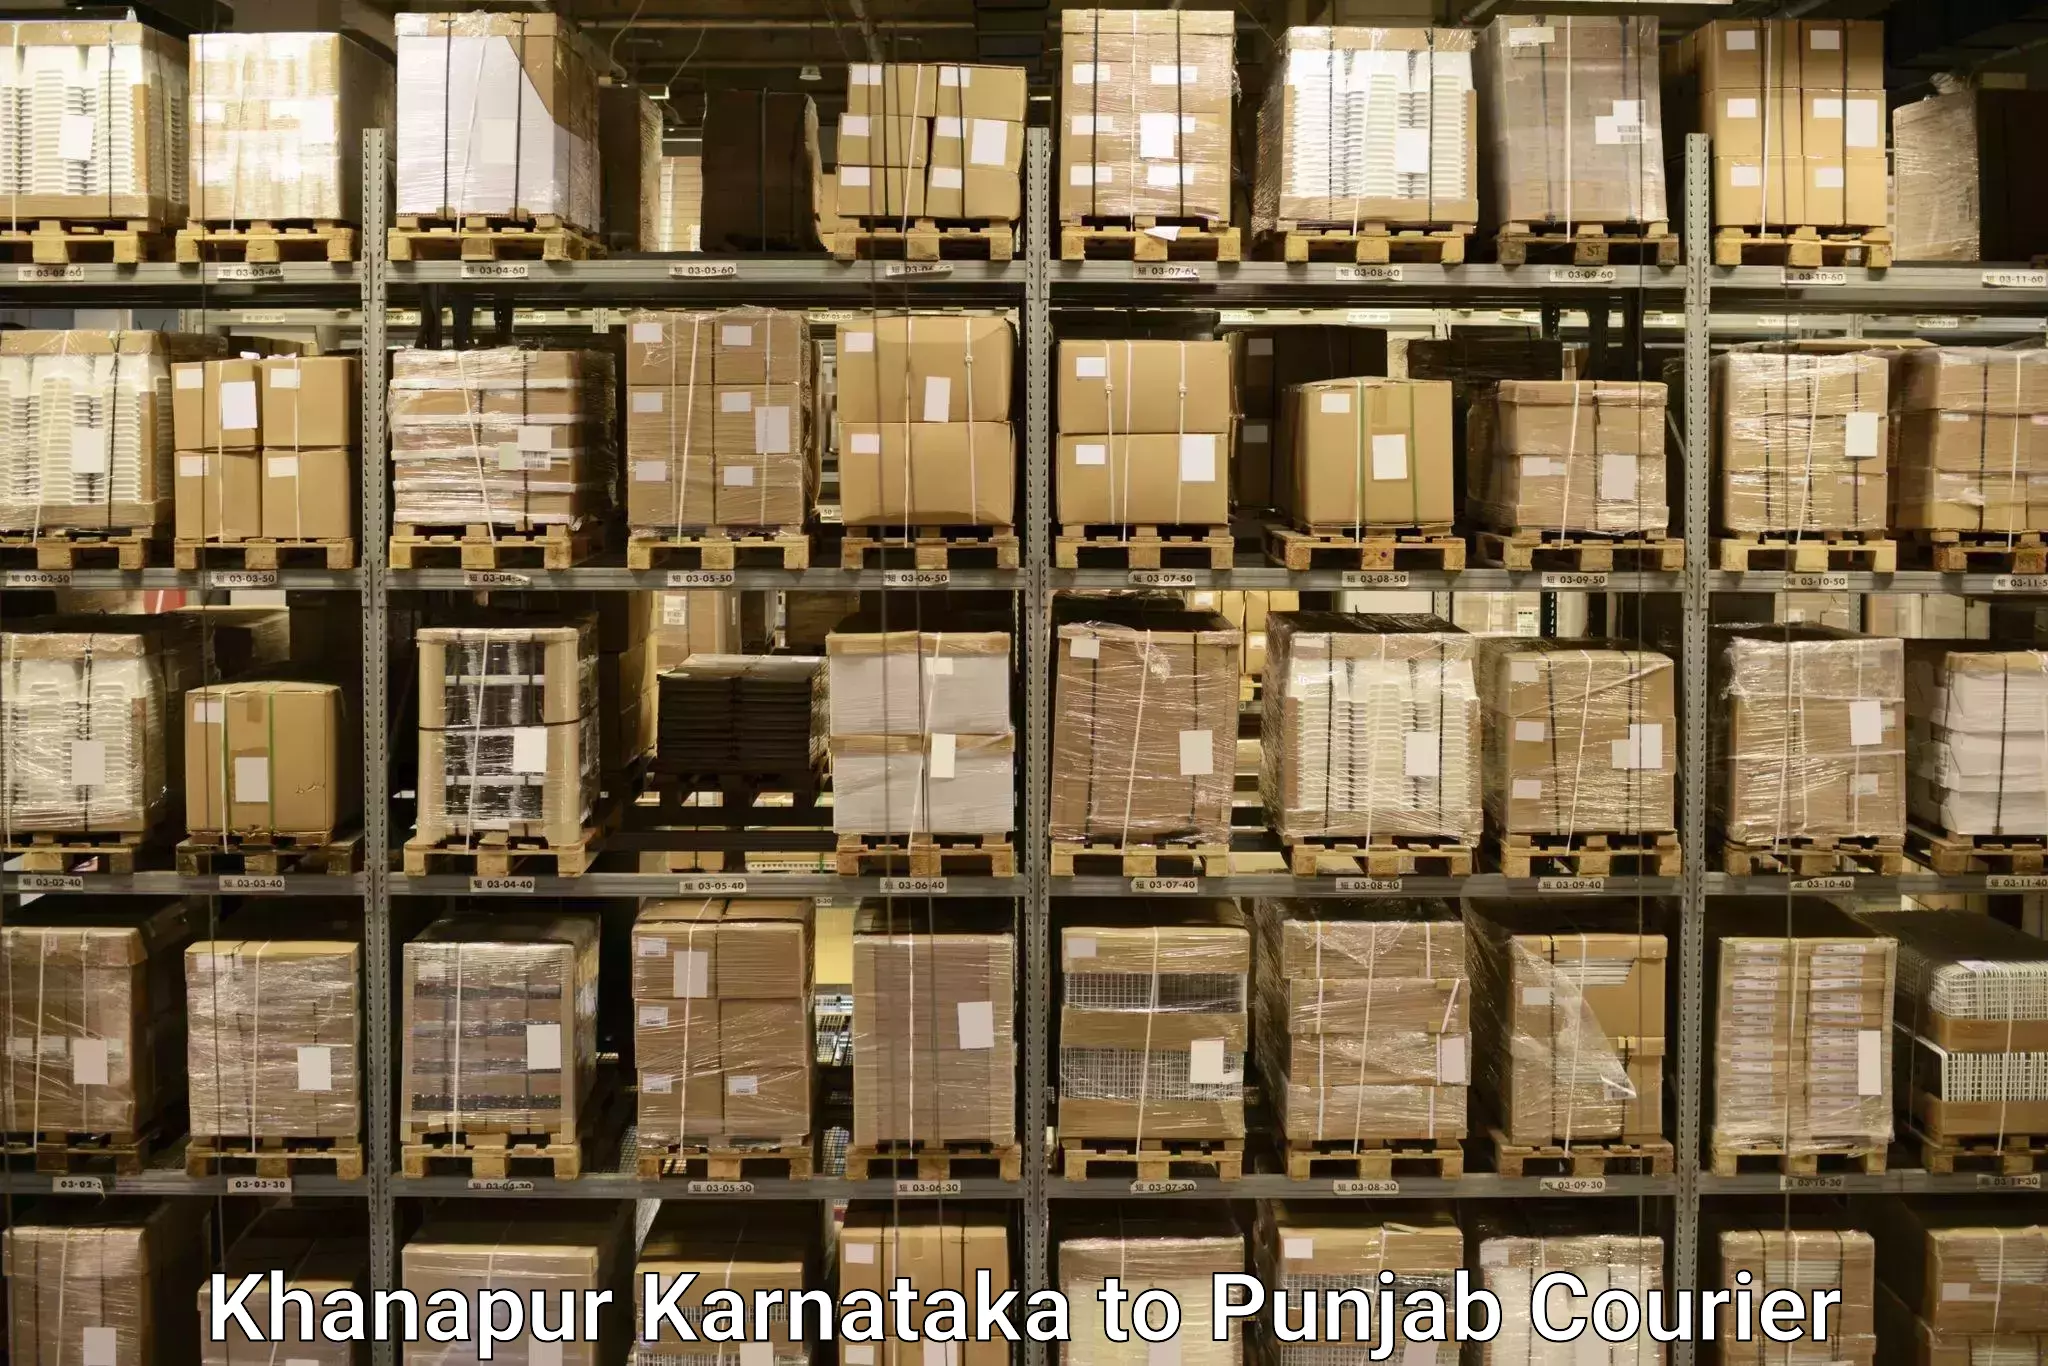 High-quality baggage shipment Khanapur Karnataka to Tarsikka